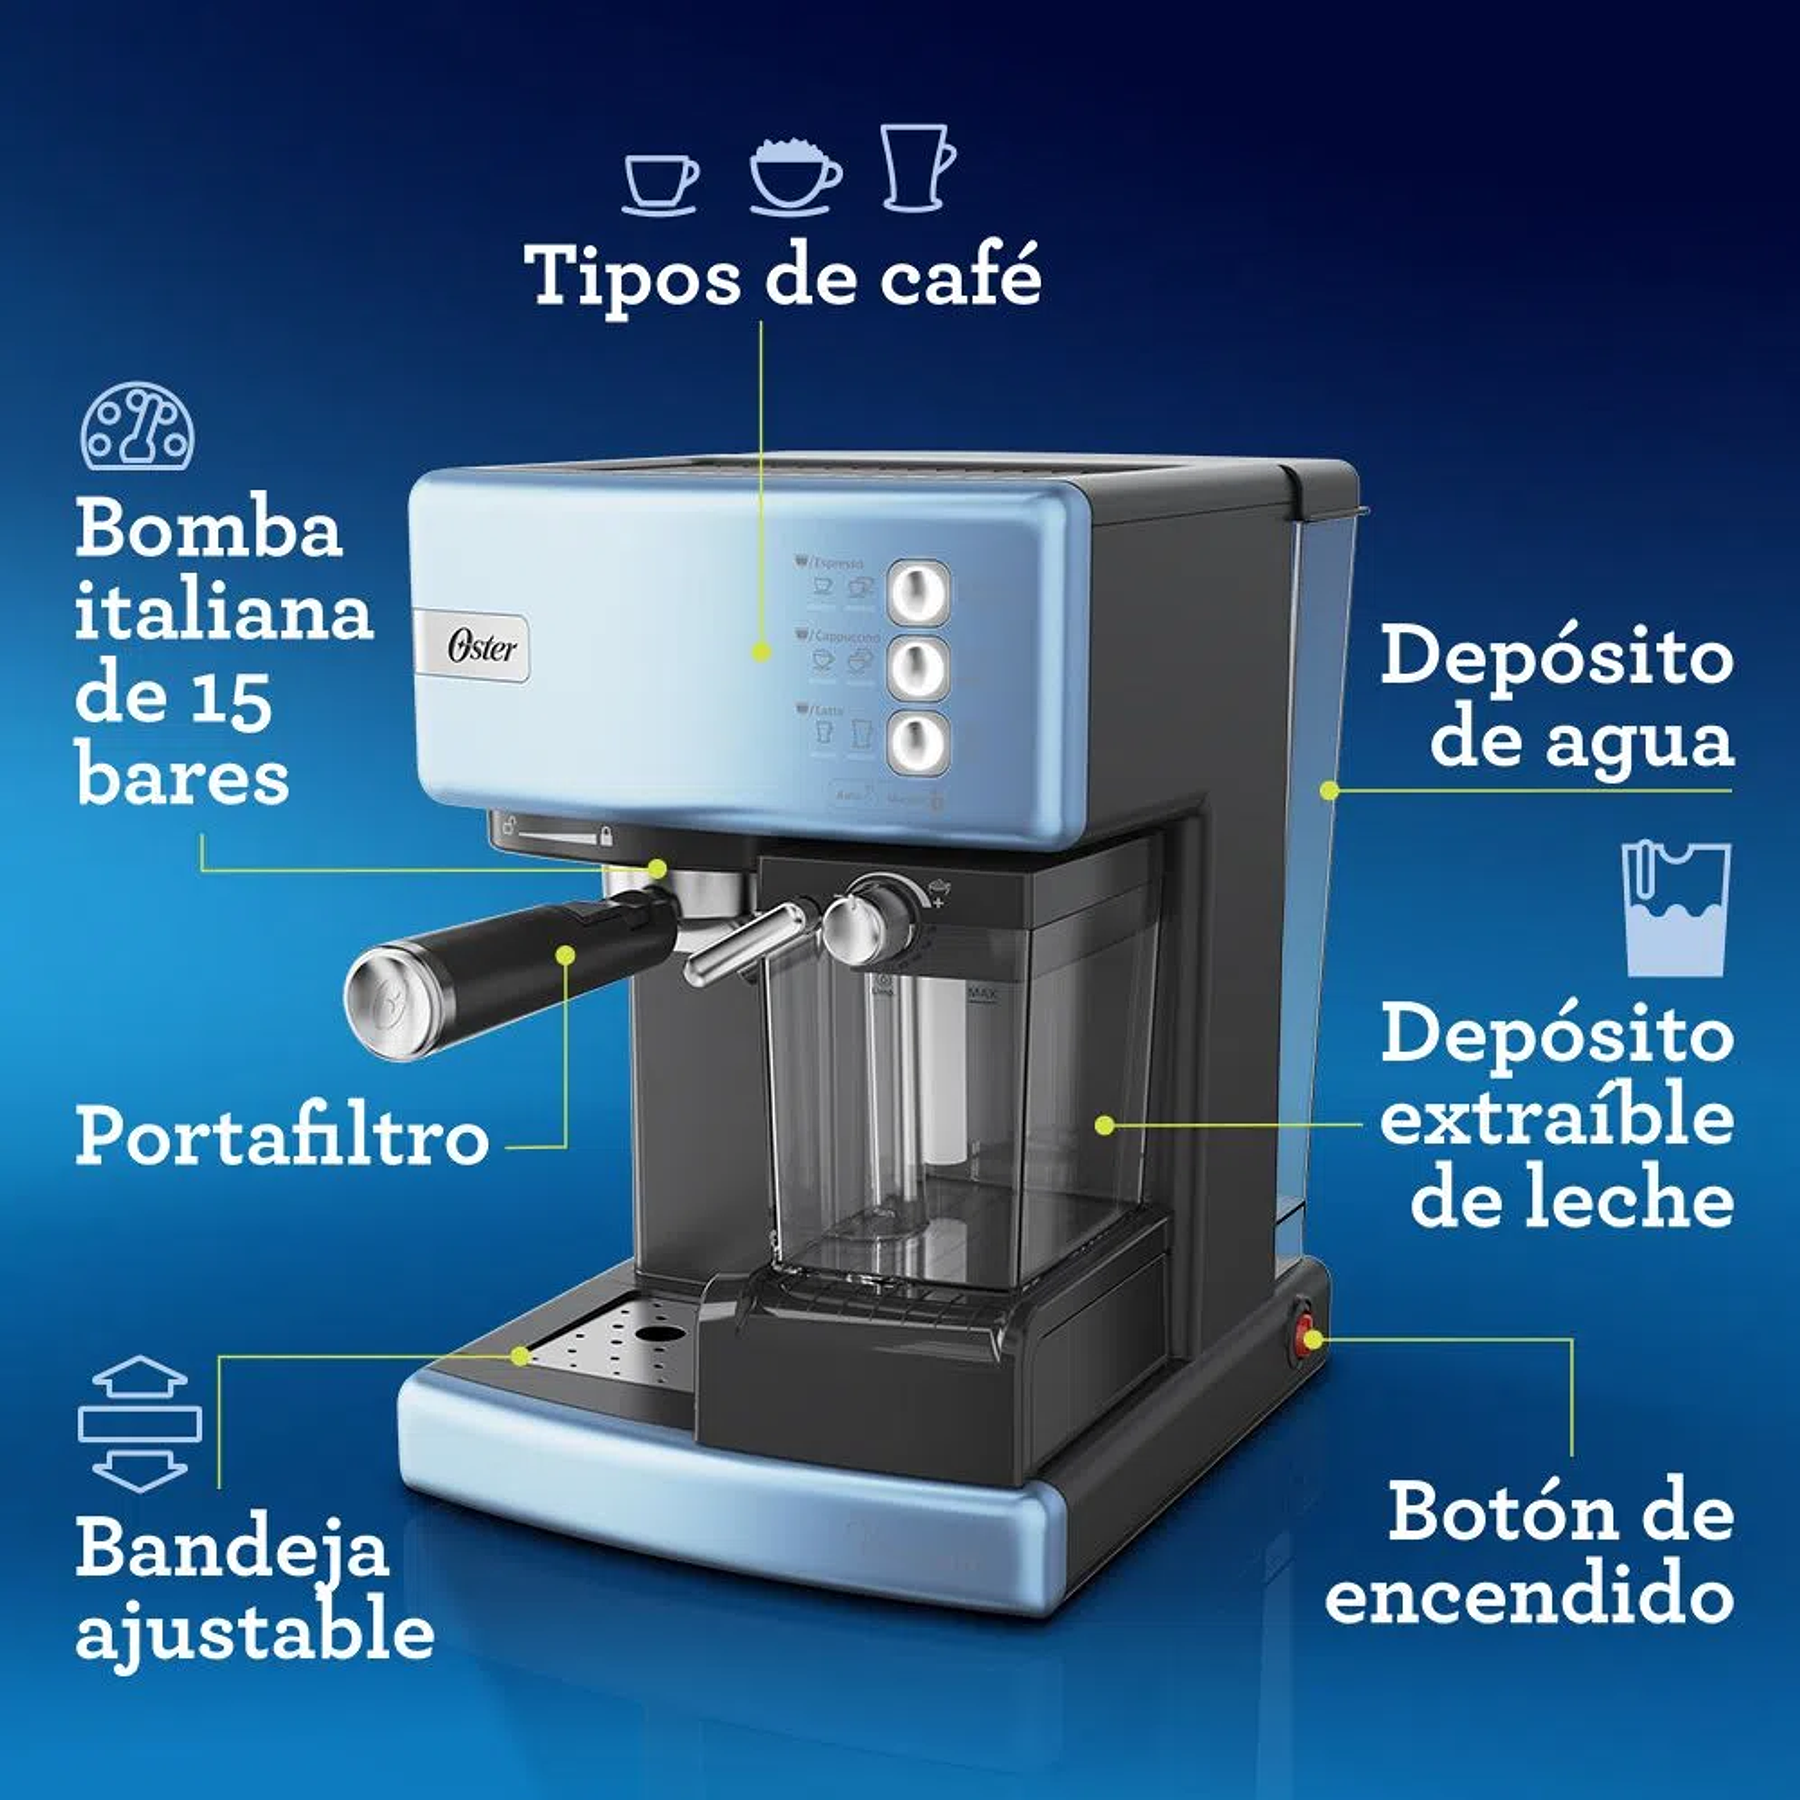 Kit Cafetera automática de espresso celeste Oster® PrimaLatt